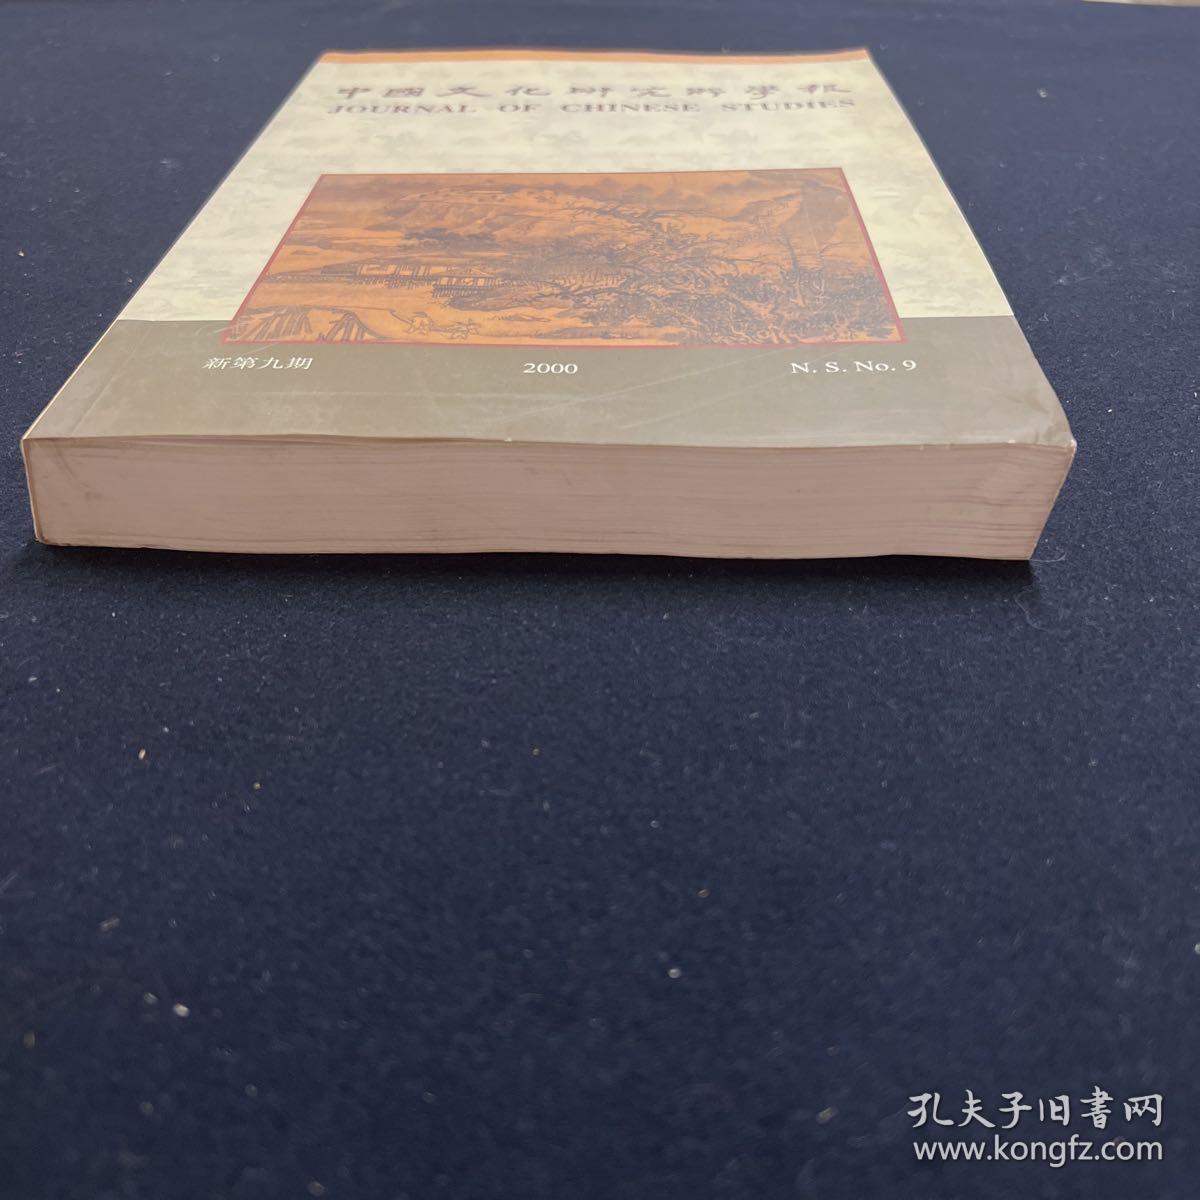 中国文化研究所学报 2000年 新第9期